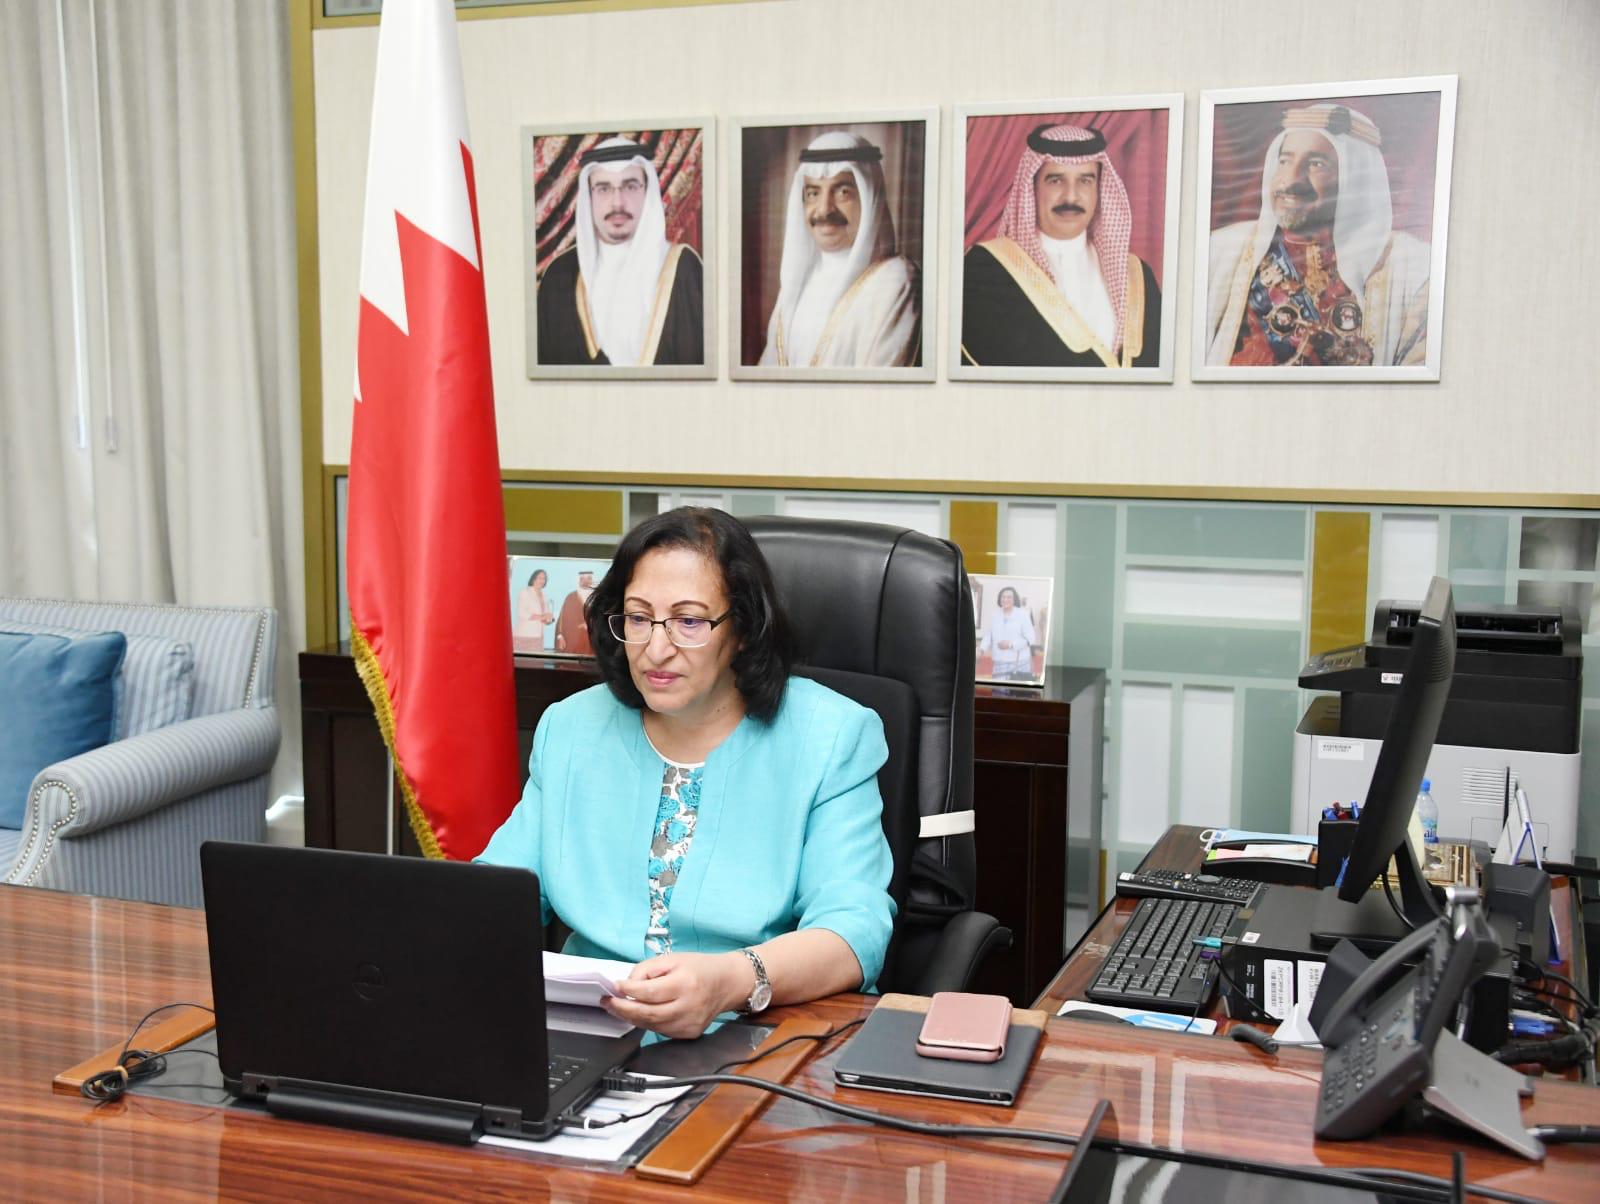 وزيرة الصحة تشارك في أعمال الدورة العادية الـ (55) لمجلس وزراء الصحة العرب ومكتبه التنفيذي الذي عقد افتراضيا عبر تقنية الاتصال المرئي